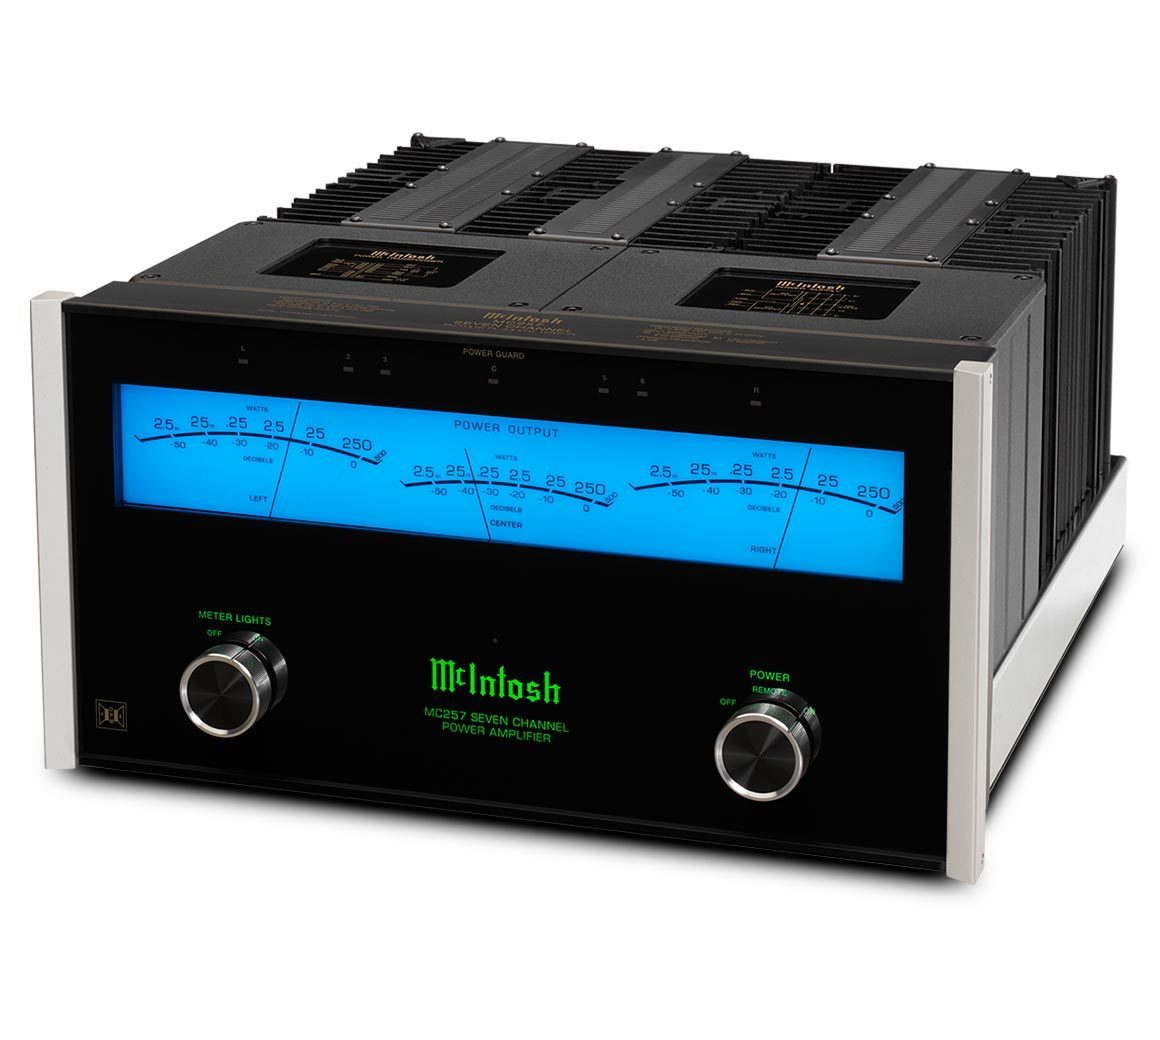 McIntosh MC257 Multi-channel power amplifier